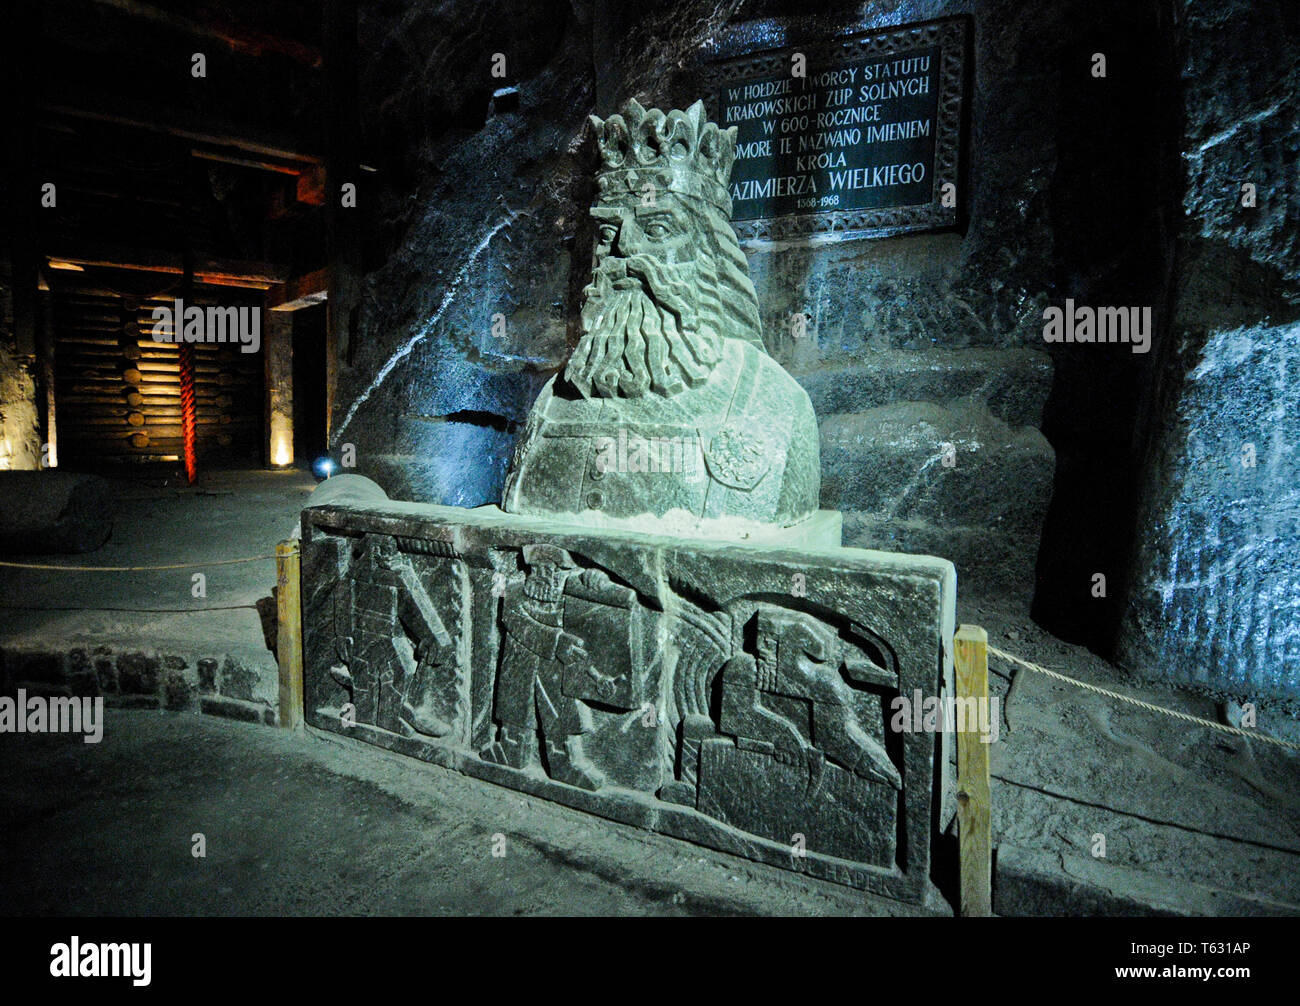 Wieliczka Salt Mine, King Casimir III the Great statue, Poland Stock Photo